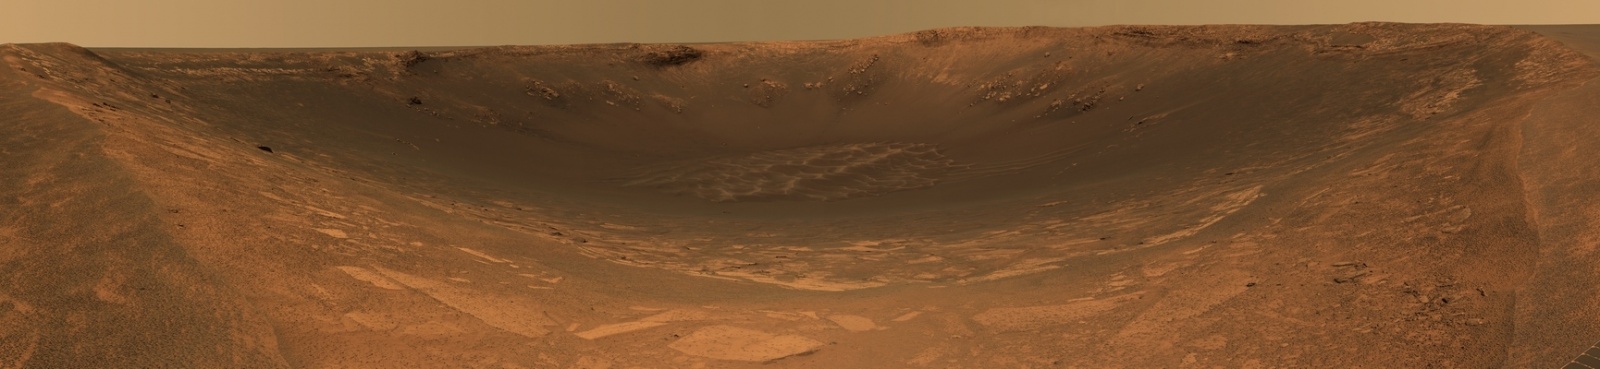 Незаметные «Возможности» в изучении Марса - 11